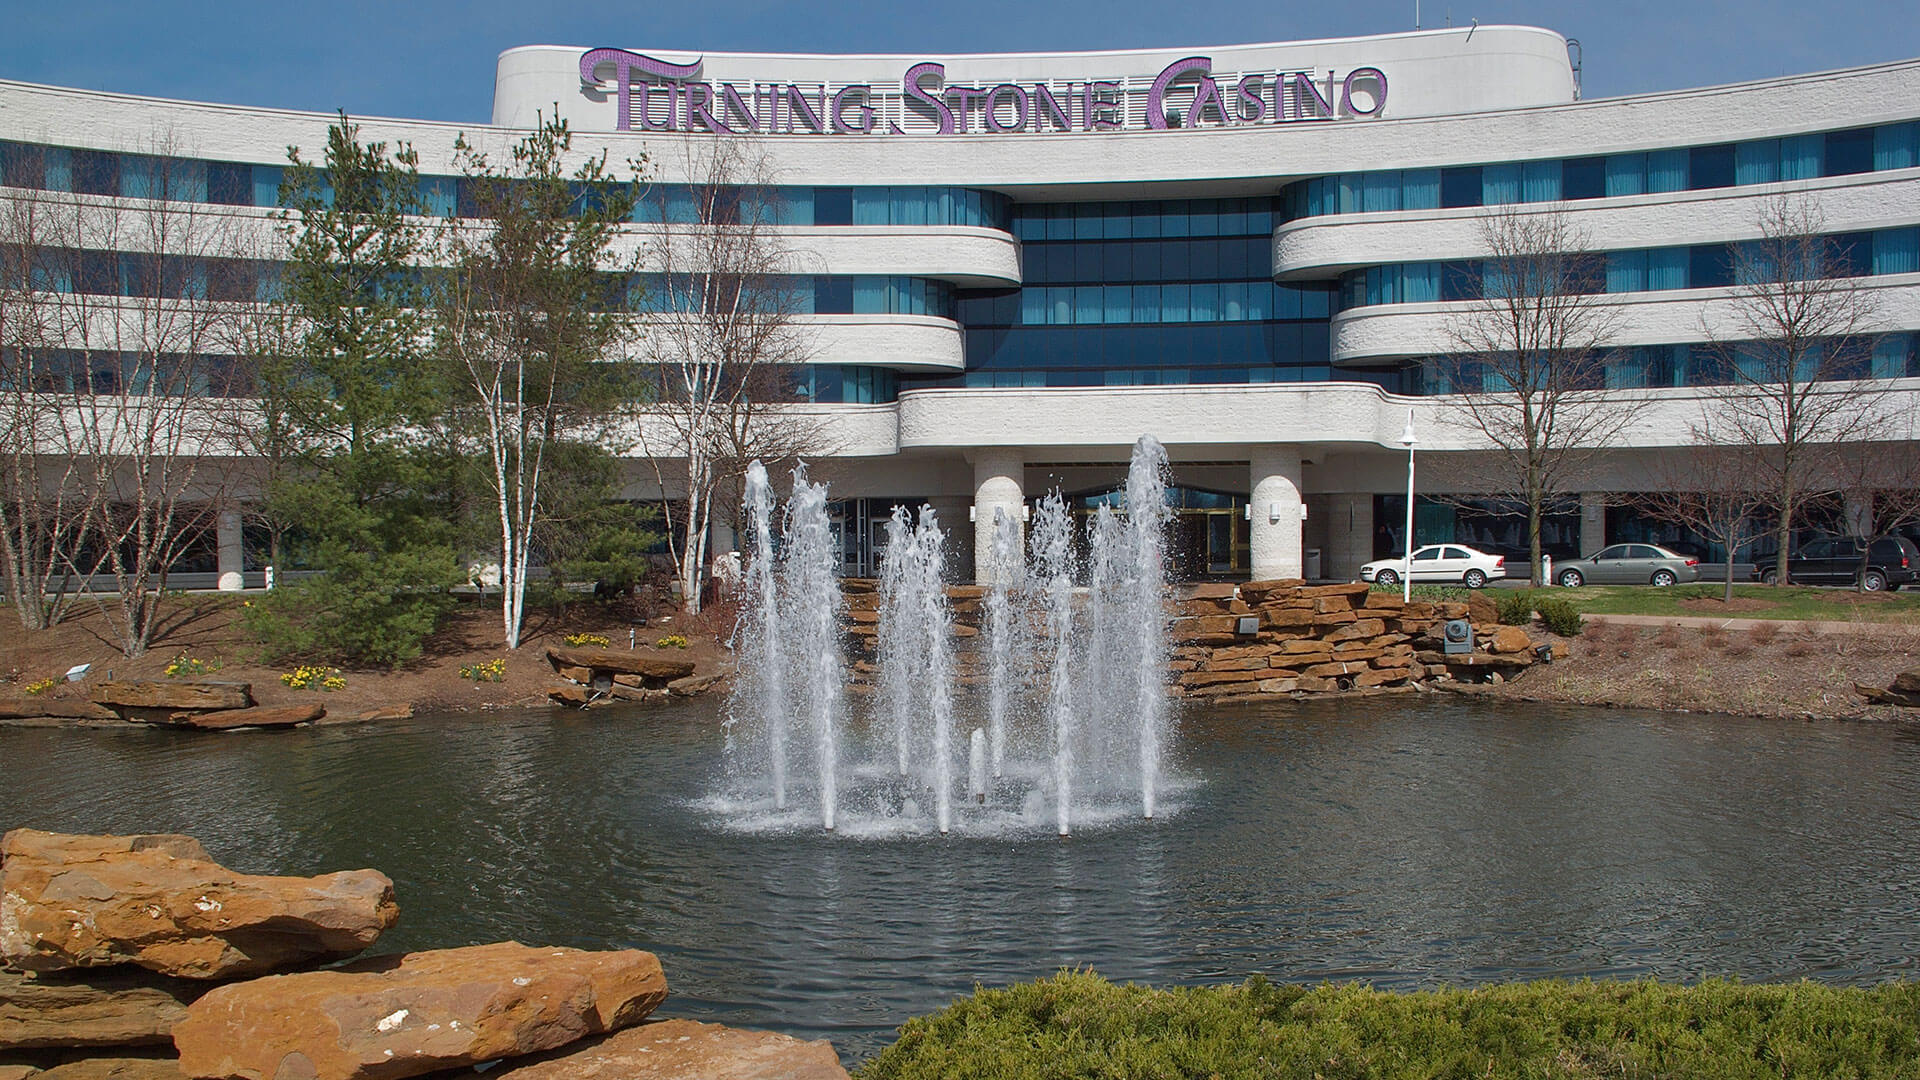 turning stone resort casino hotel